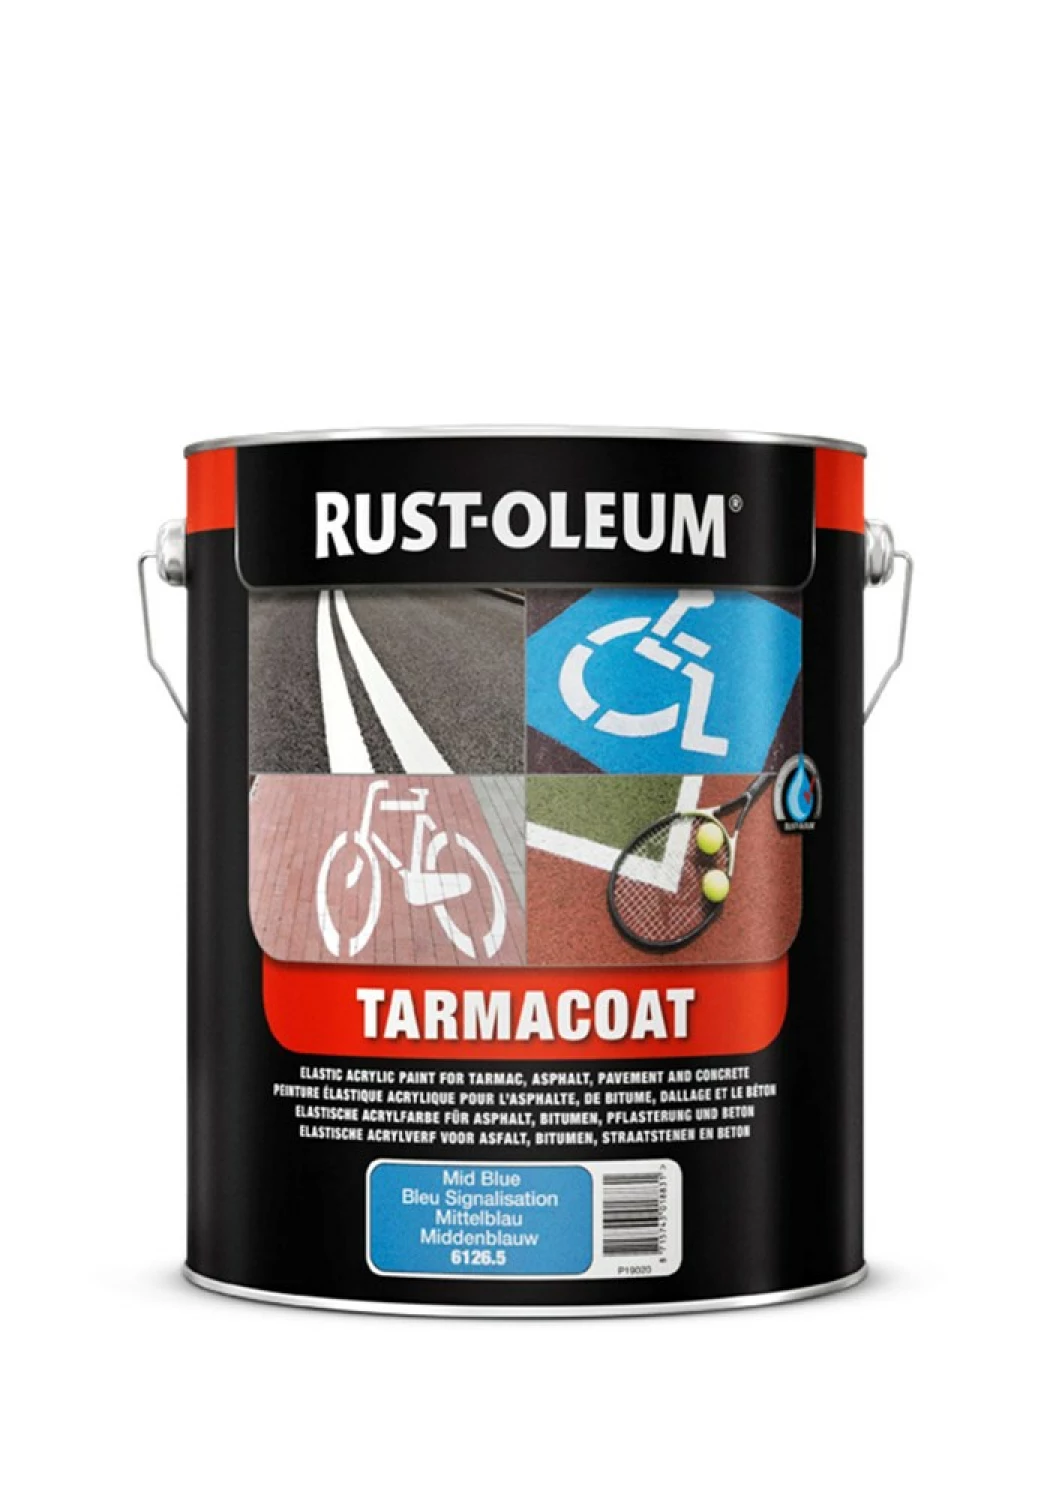 Rust-Oleum Tarmacoat Wegenverf - engelsrood - 5L-image